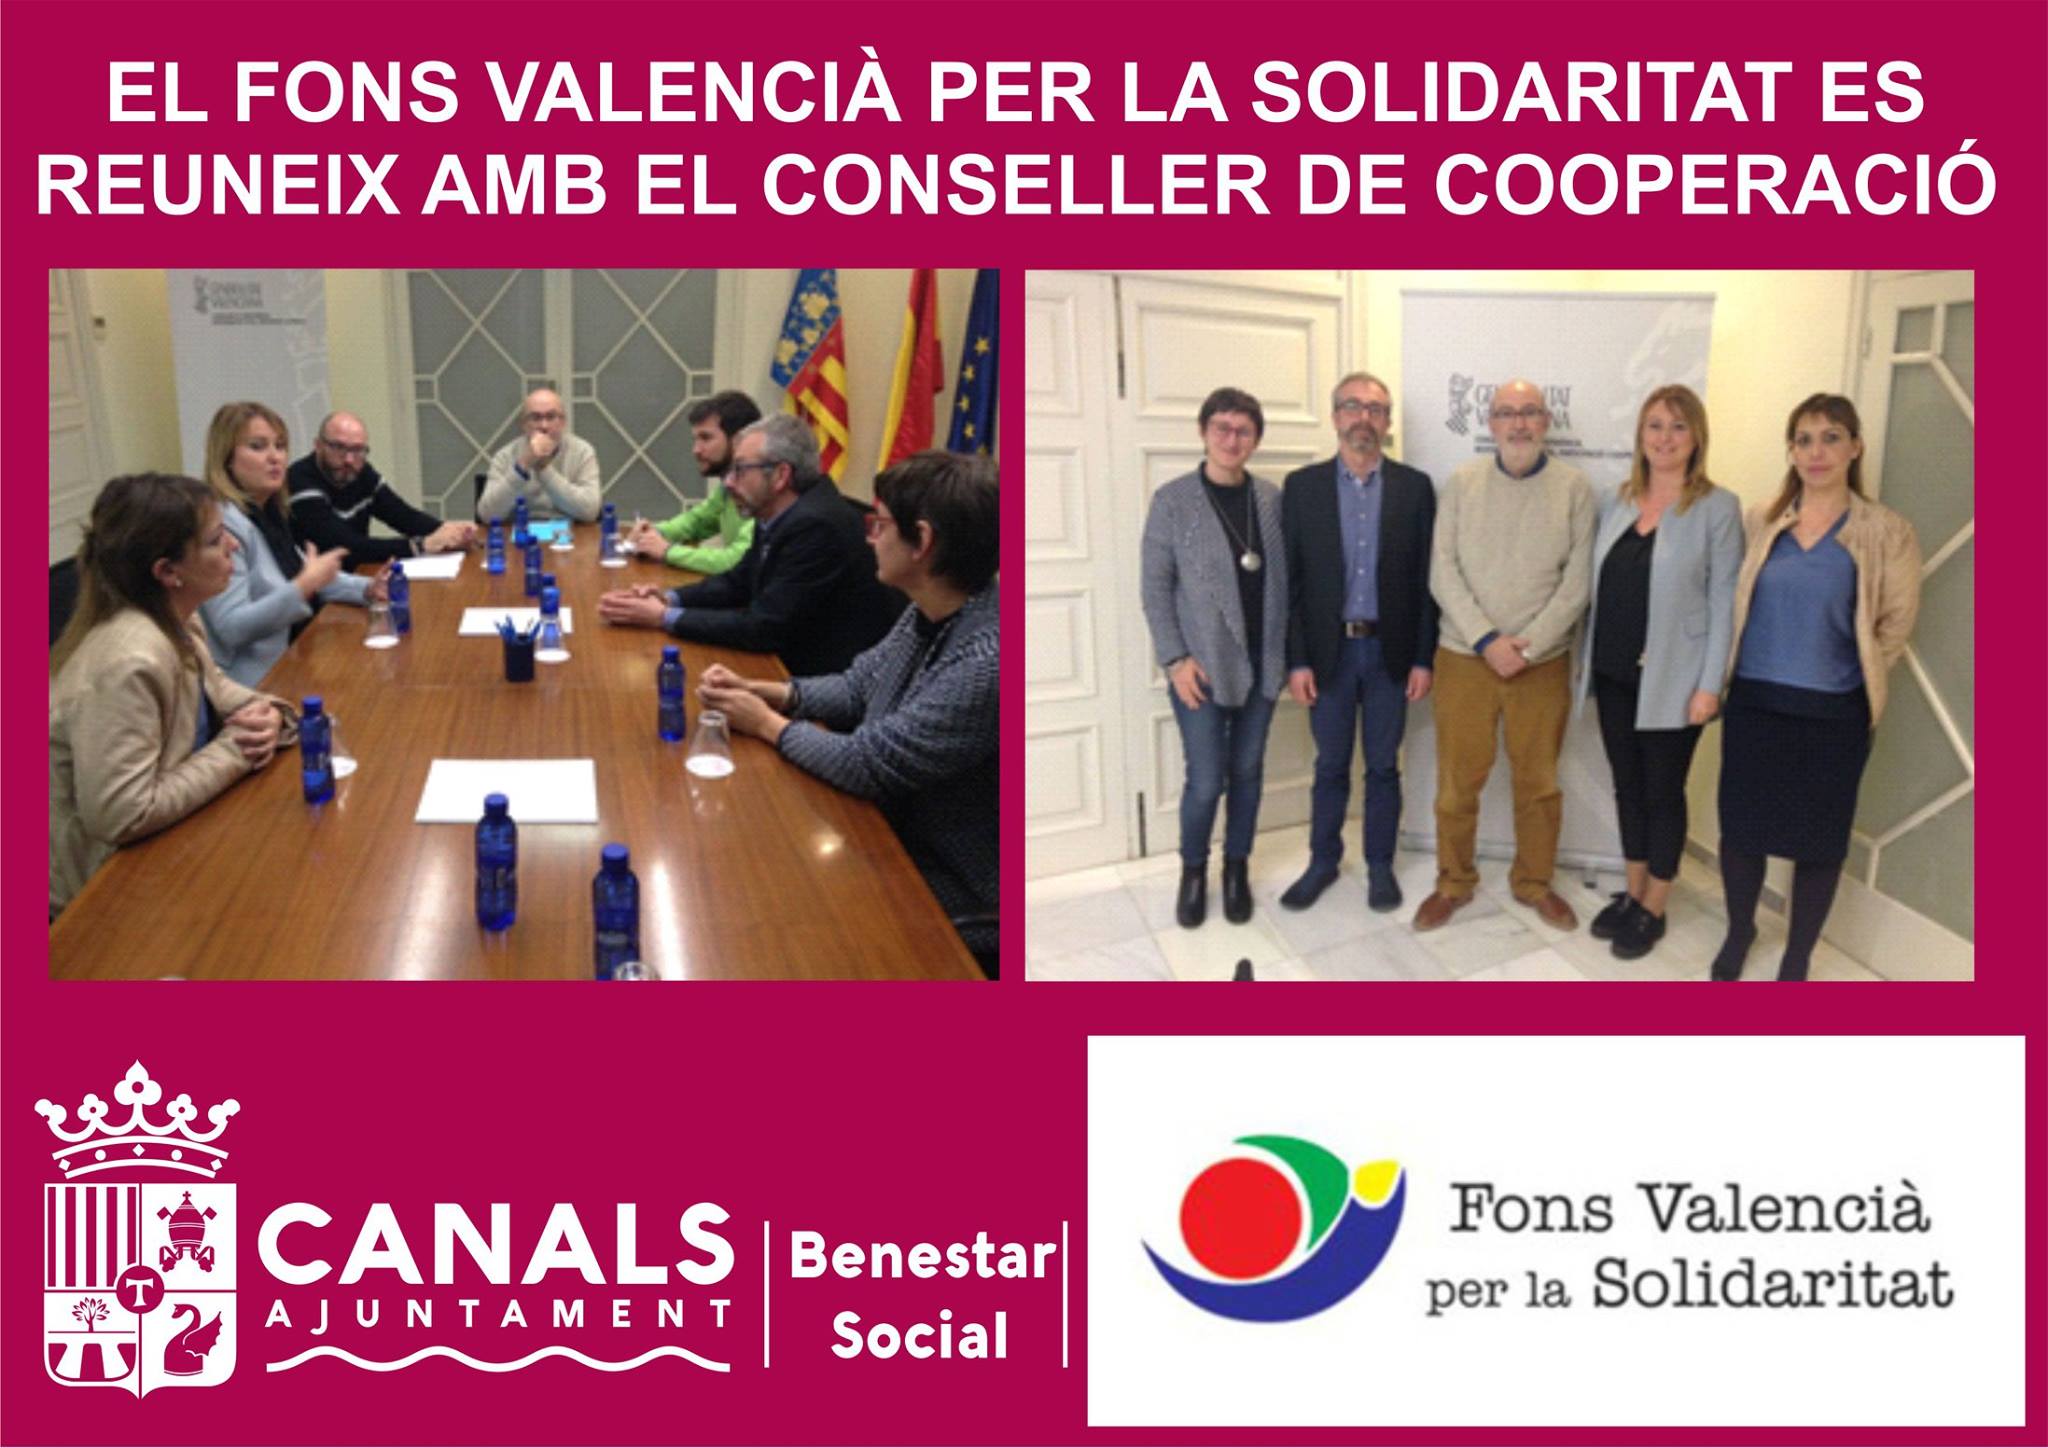 2017.01.27 Reunió amb el Fons de Solidaritat. Ajuntament de Canals.